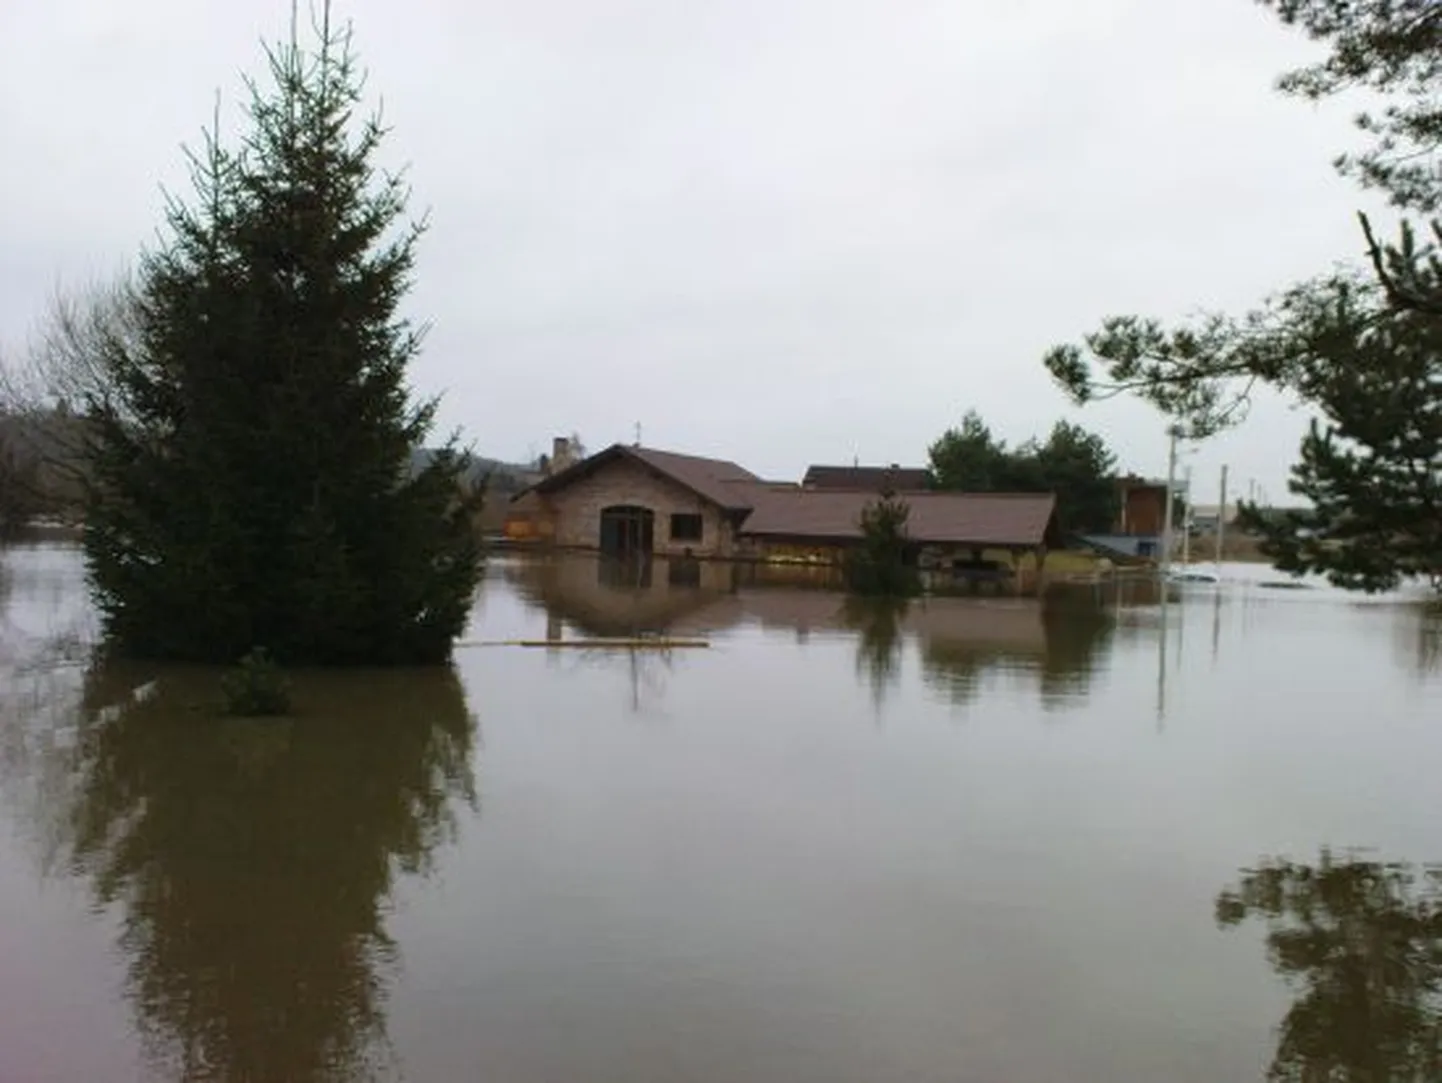 Leedut on tabanud suured üleujutused, kuna seal on suuremad jõed ning lisaks sadas neil sulaga koos mitu päeva järjest vihma.